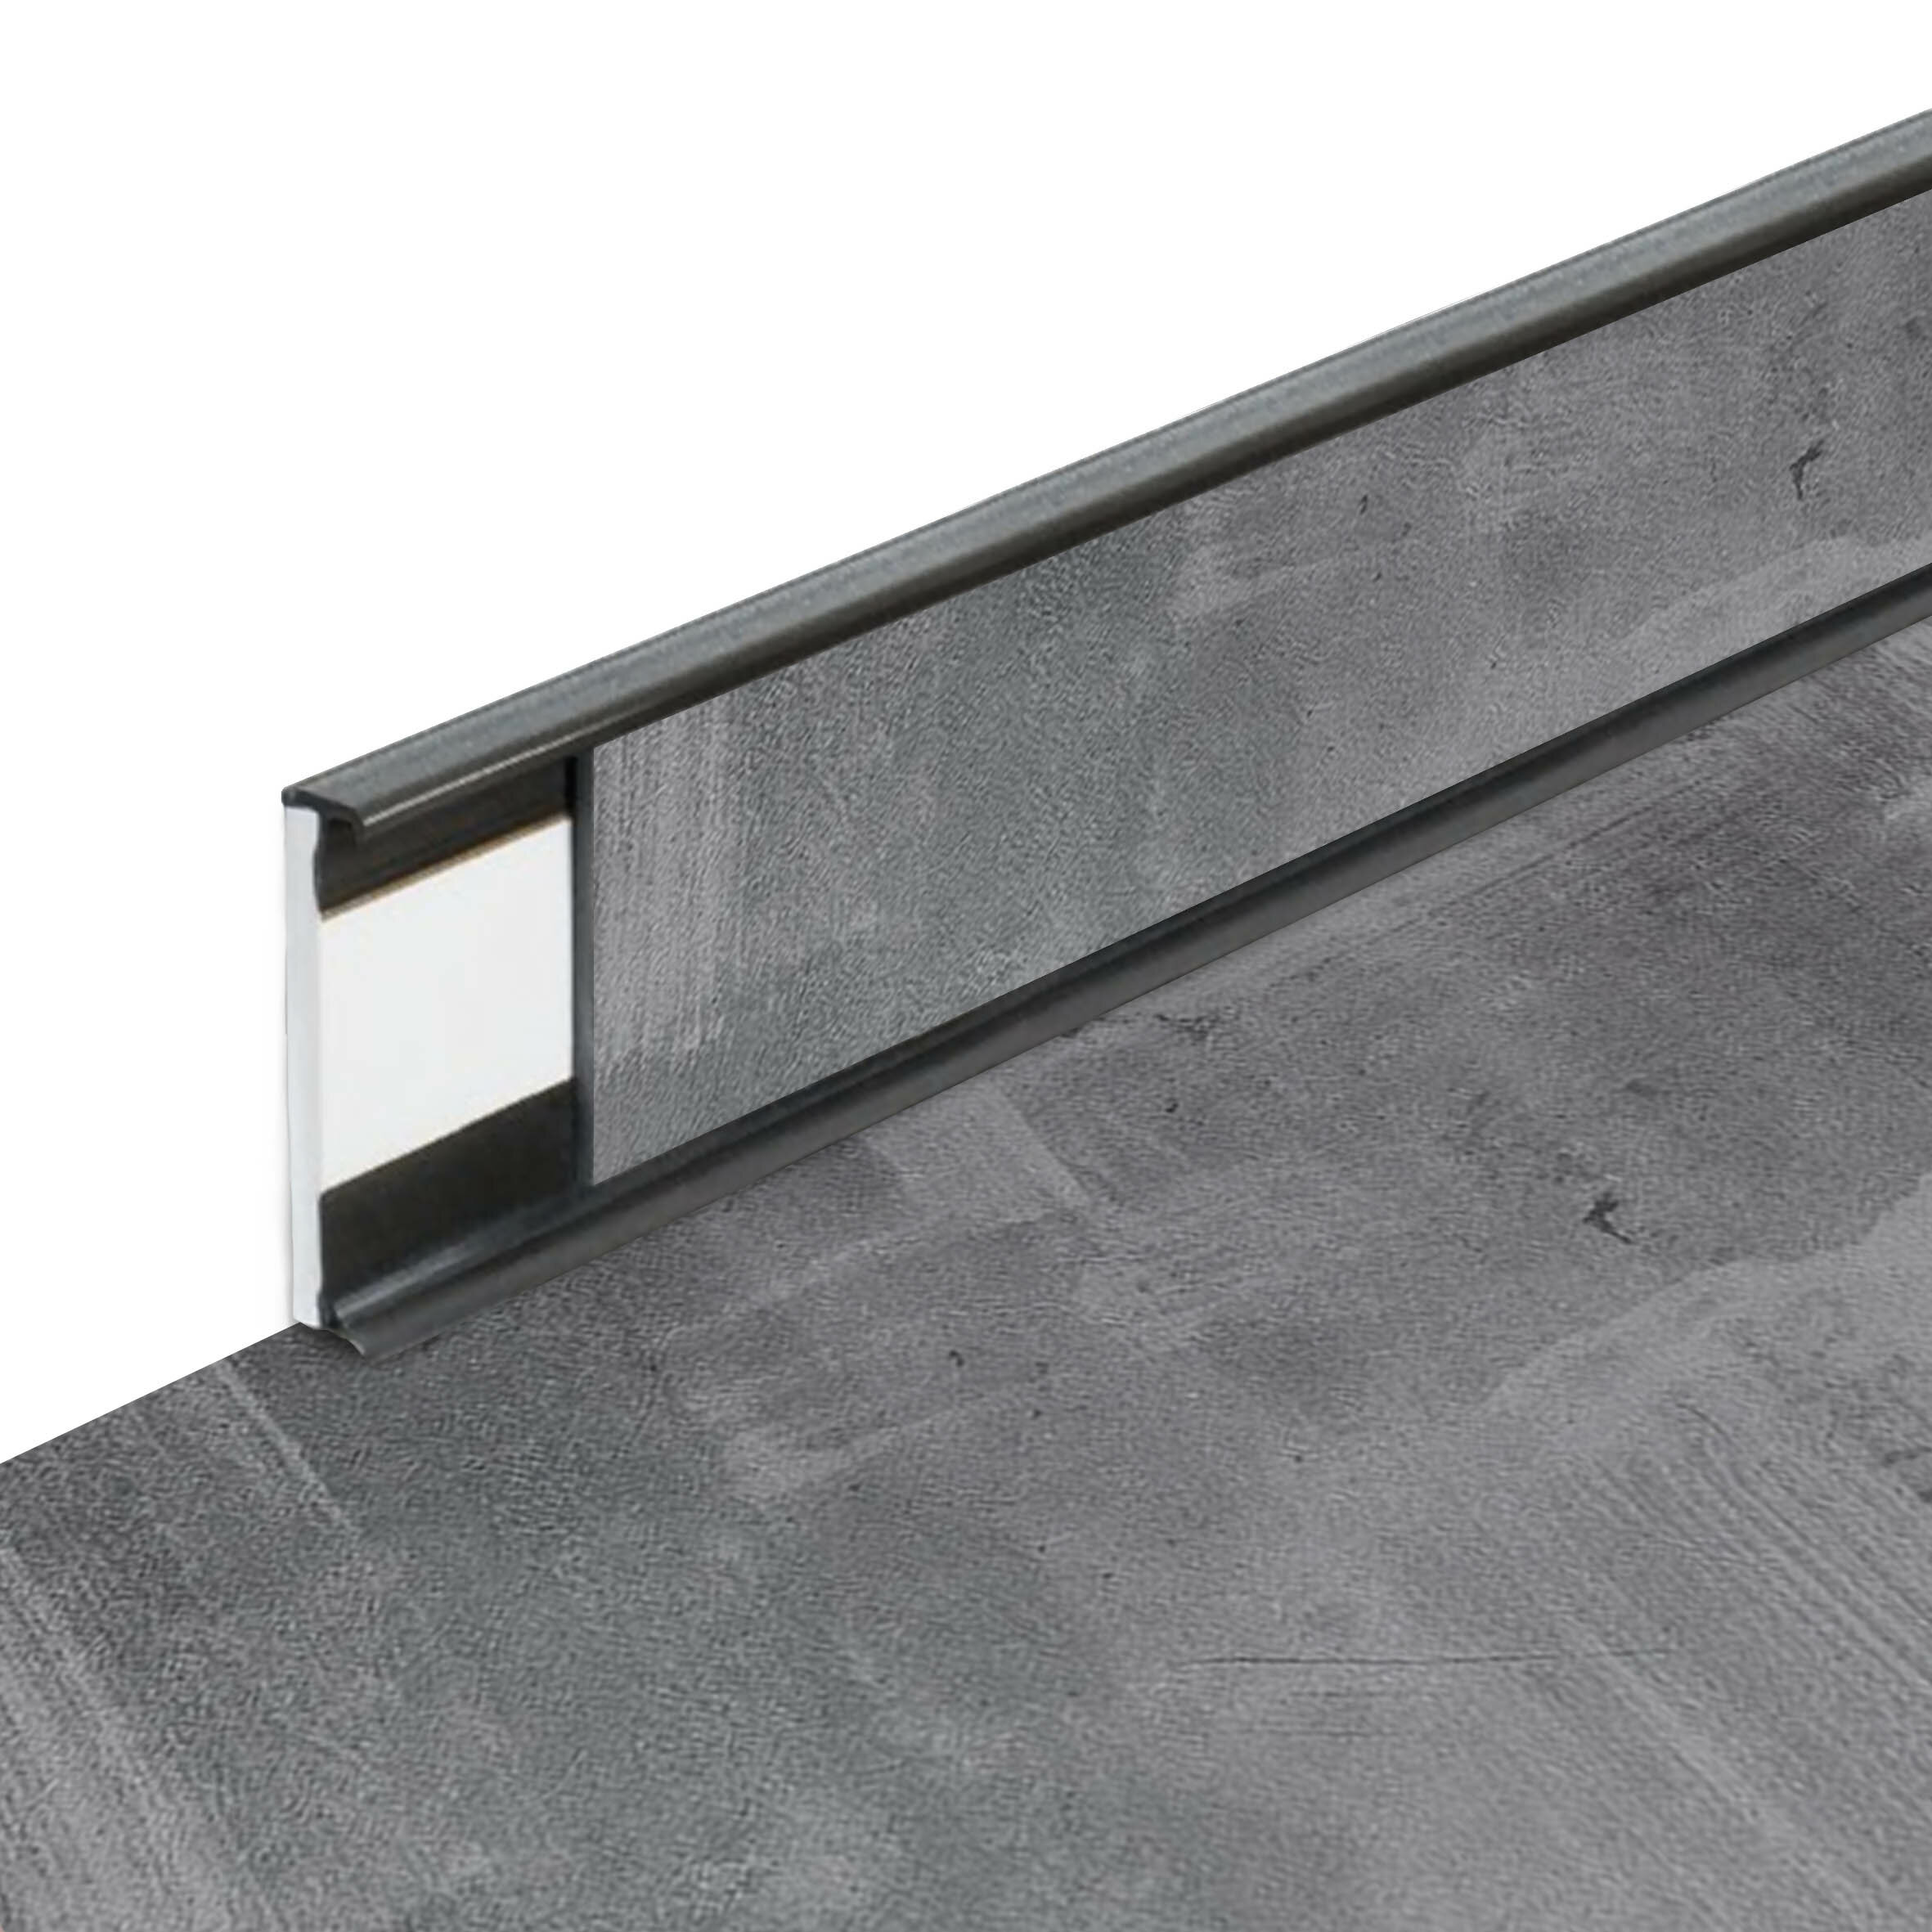 PVC vinylová soklová podlahová lišta Fortelock Business Viken Ghost Buster C004 Graphite - délka 200 cm, výška 5,8 cm, tloušťka 1,2 cm